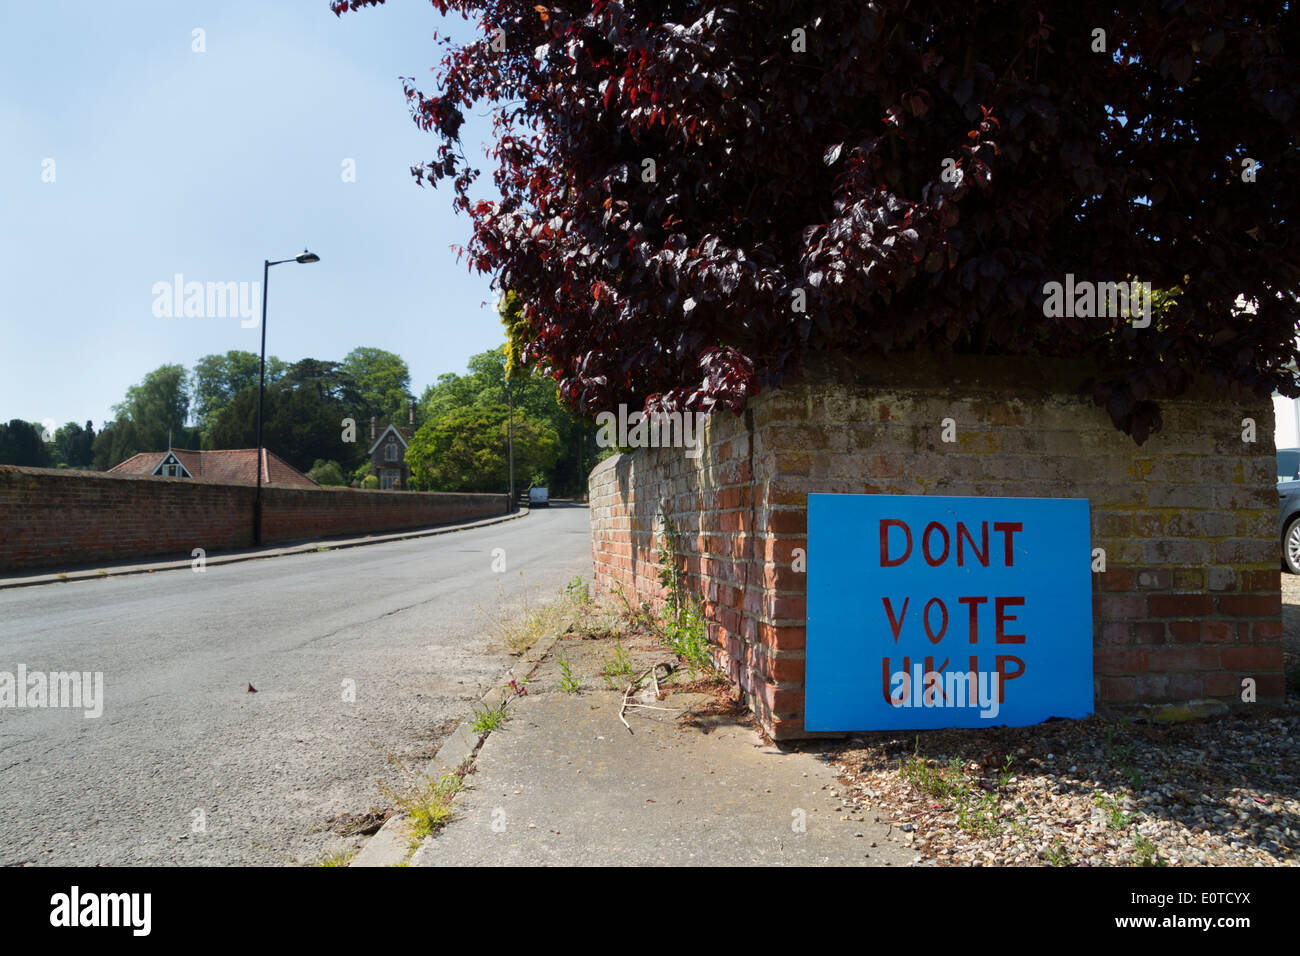 L'UKIP et ne vote VOTE UKIP panneaux électoraux mis en place dans la même rue Banque D'Images